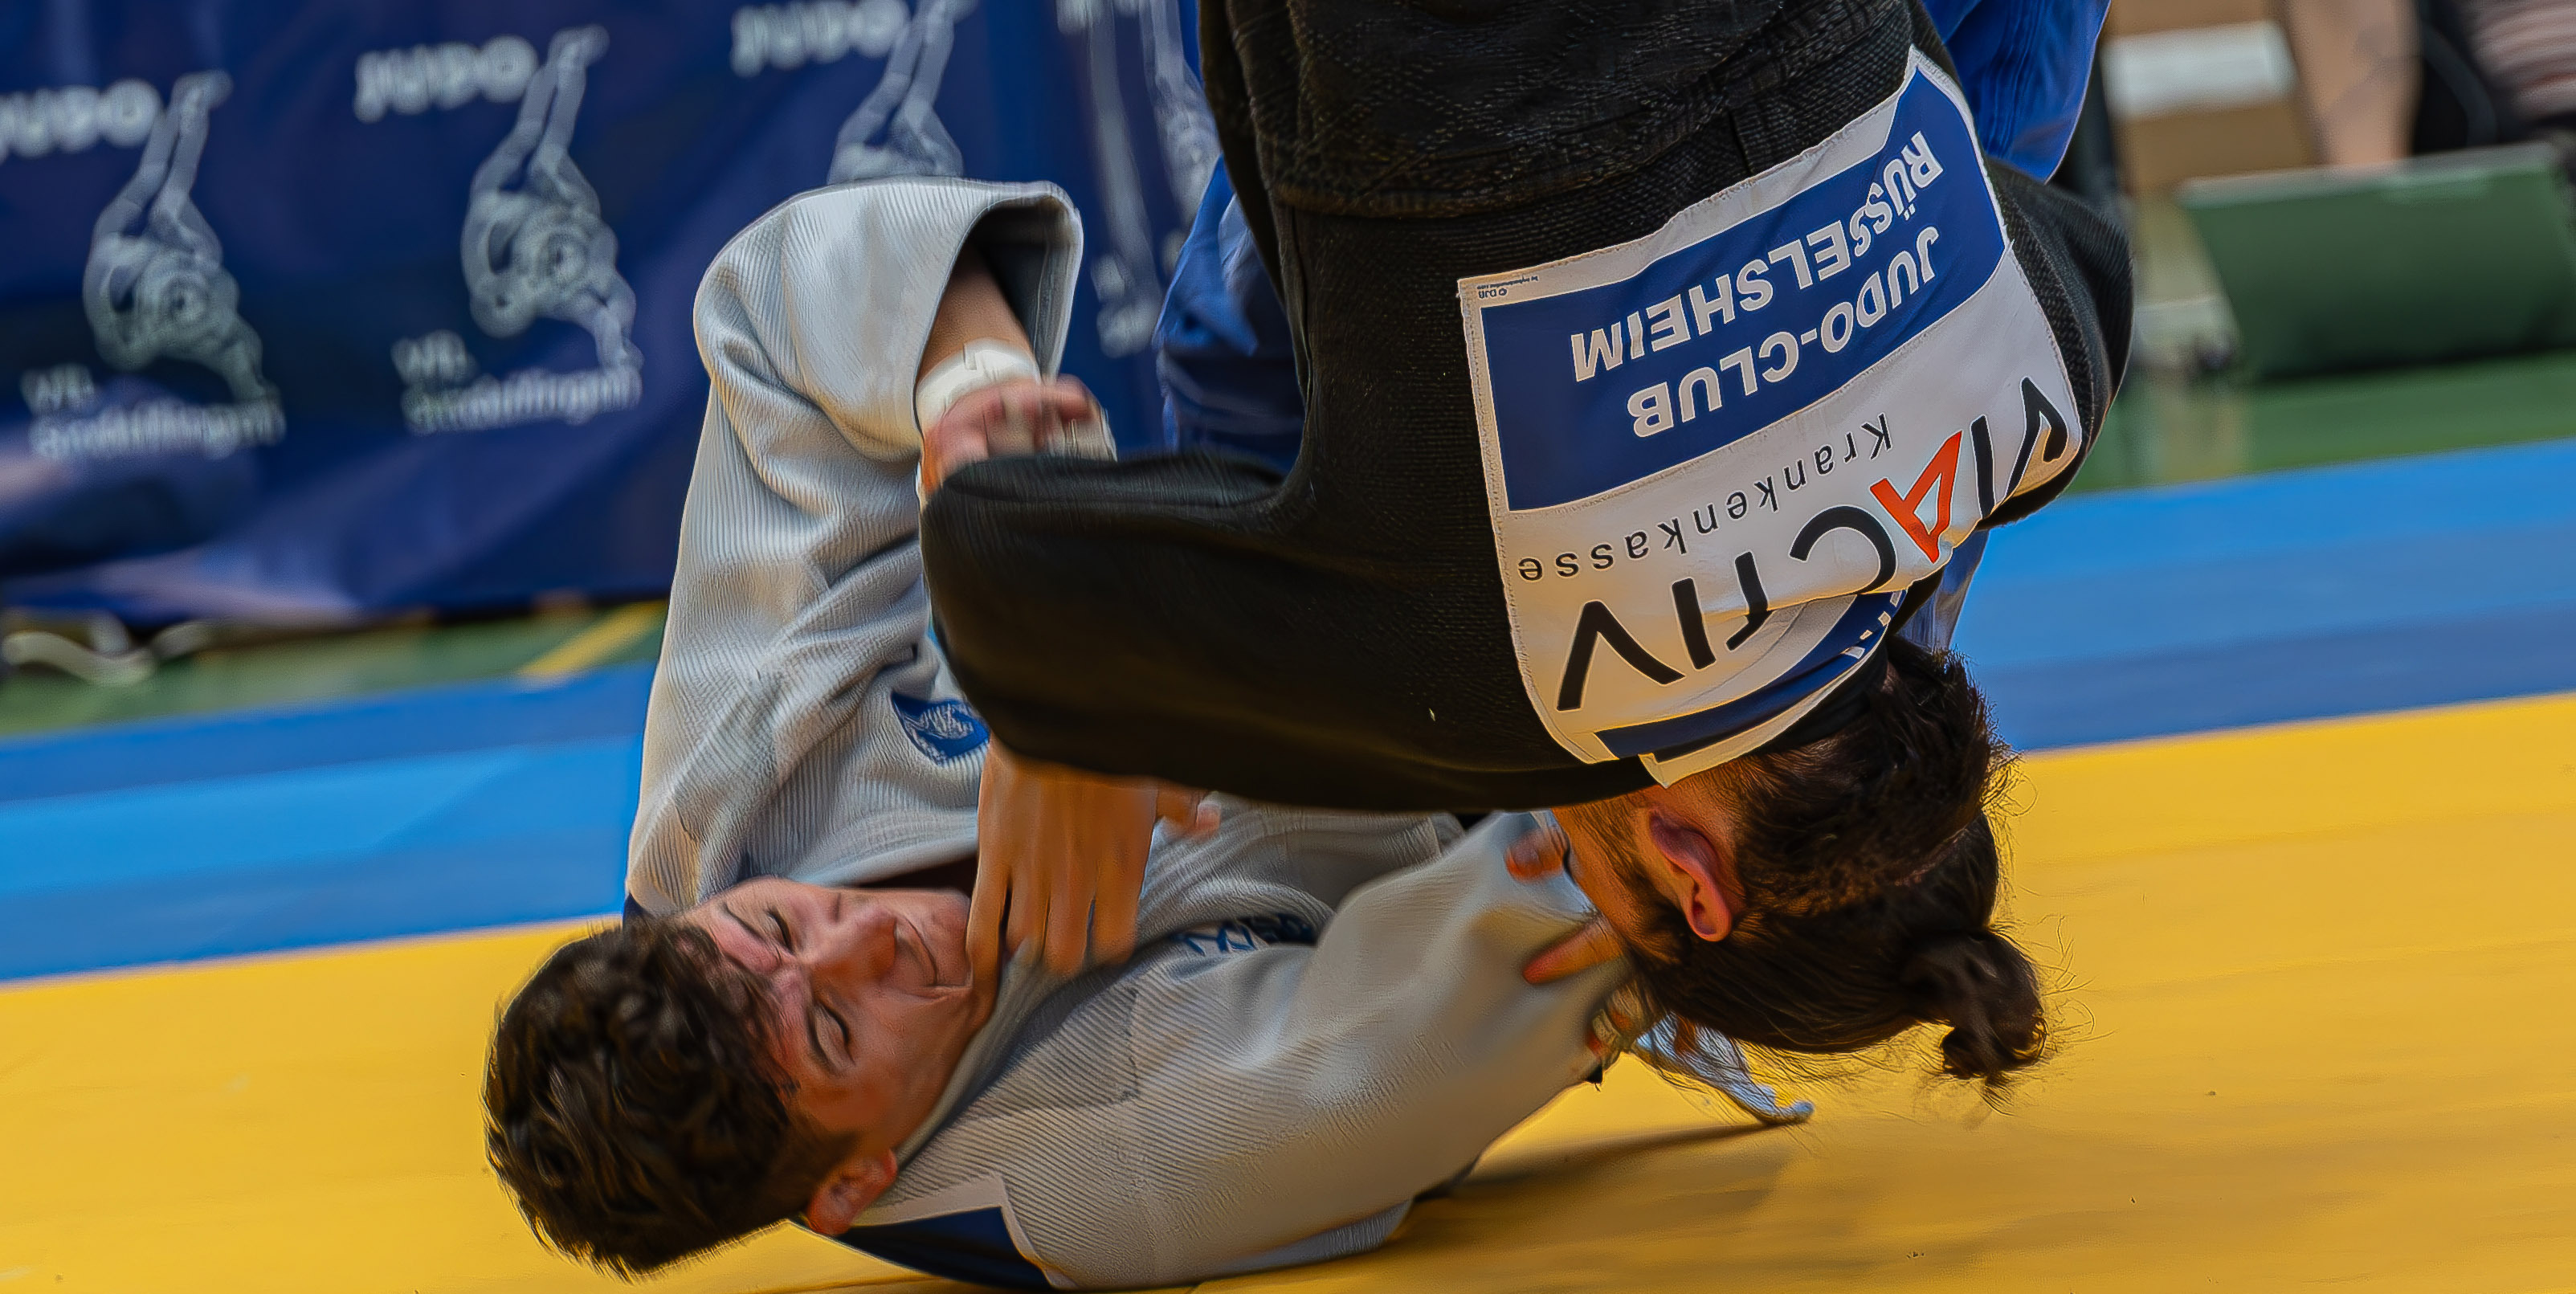 Energisch: Der Sindelfinger Judokämpfer Daniel Ruf (unten) will am Samstag gegen Ingolstadt punkten. Bild: Vilz